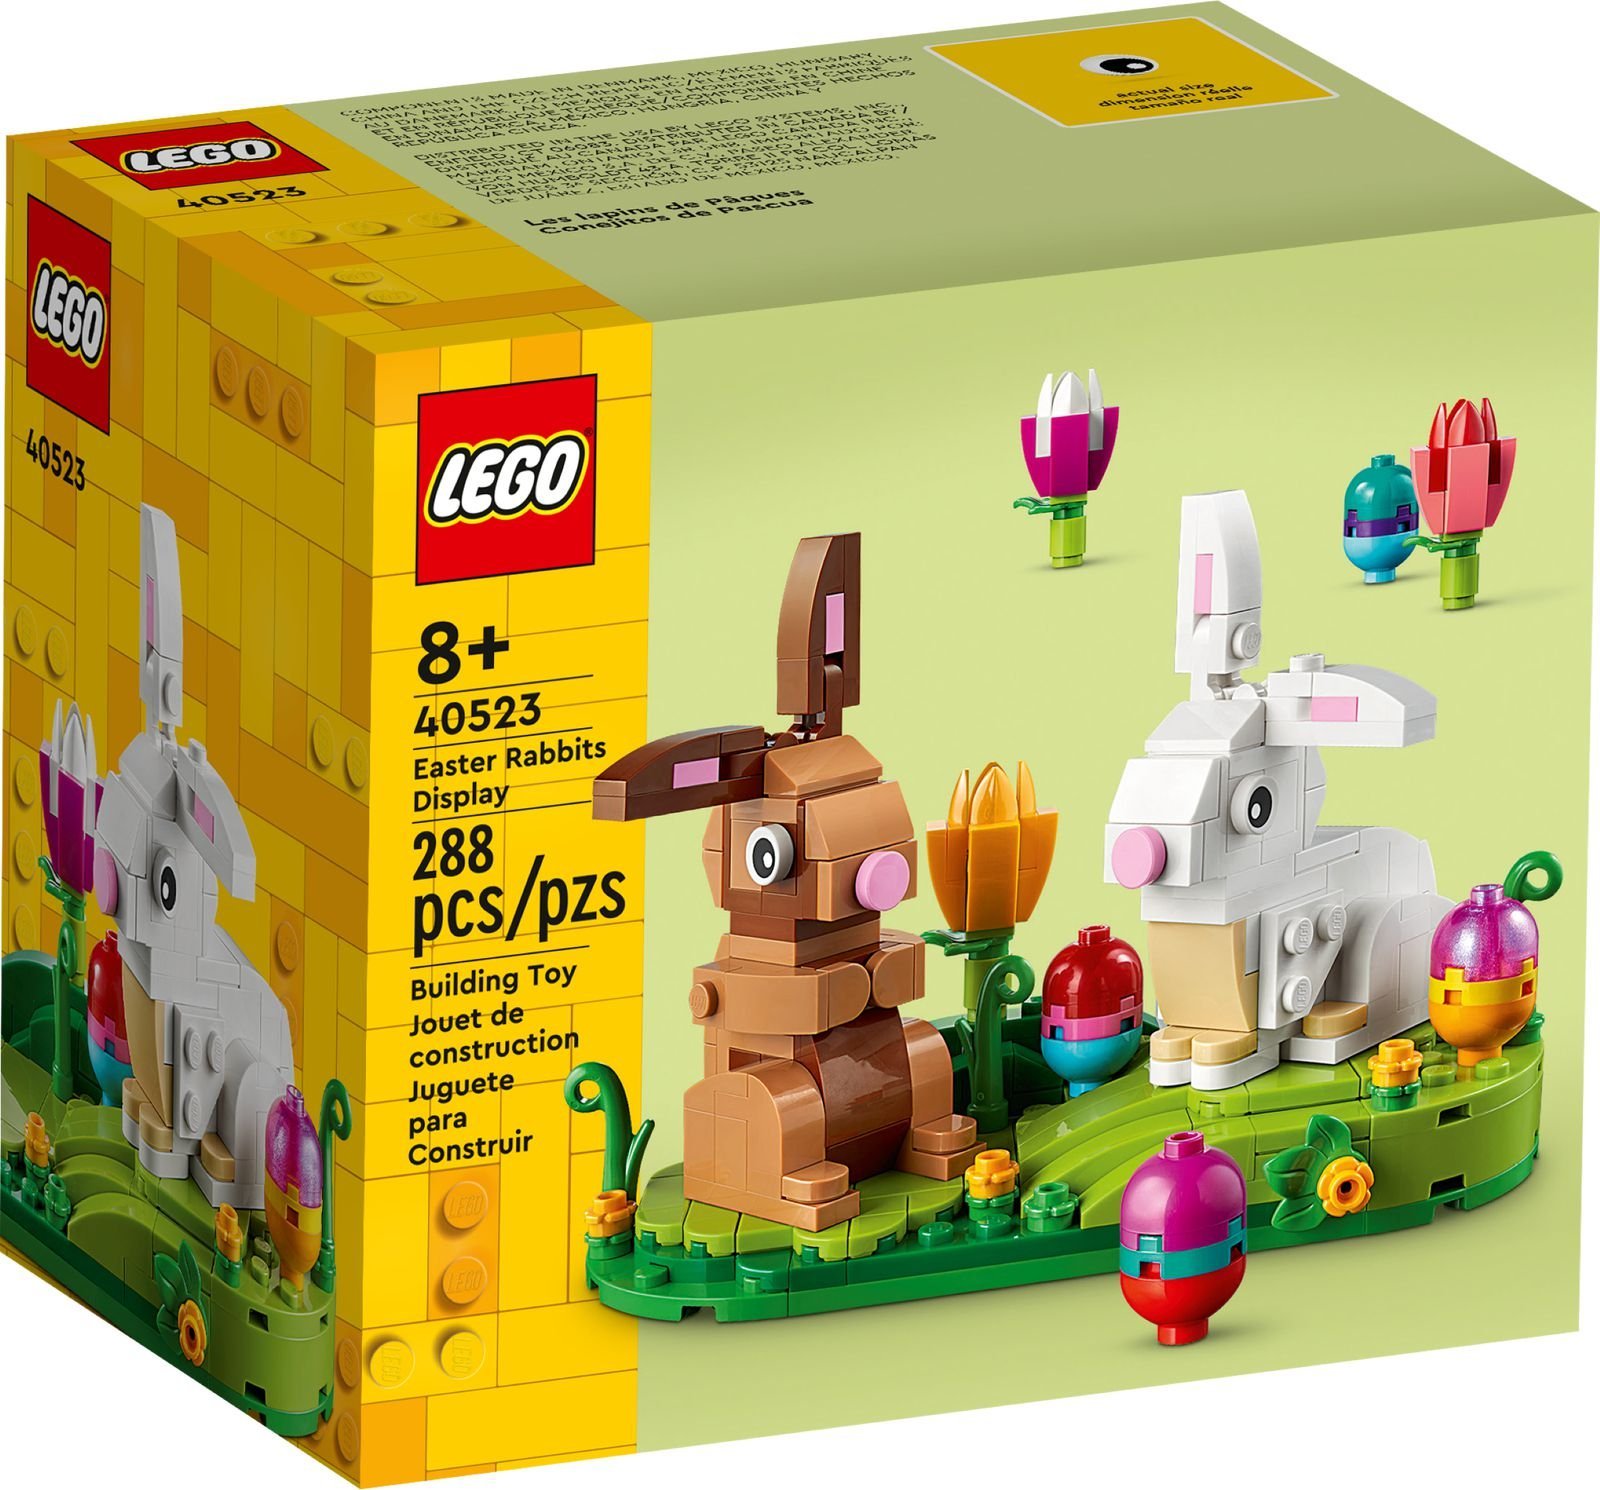 LEGO Exclusive Zajaczki wielkanocne (40523) 40523 (5702017166223) LEGO konstruktors